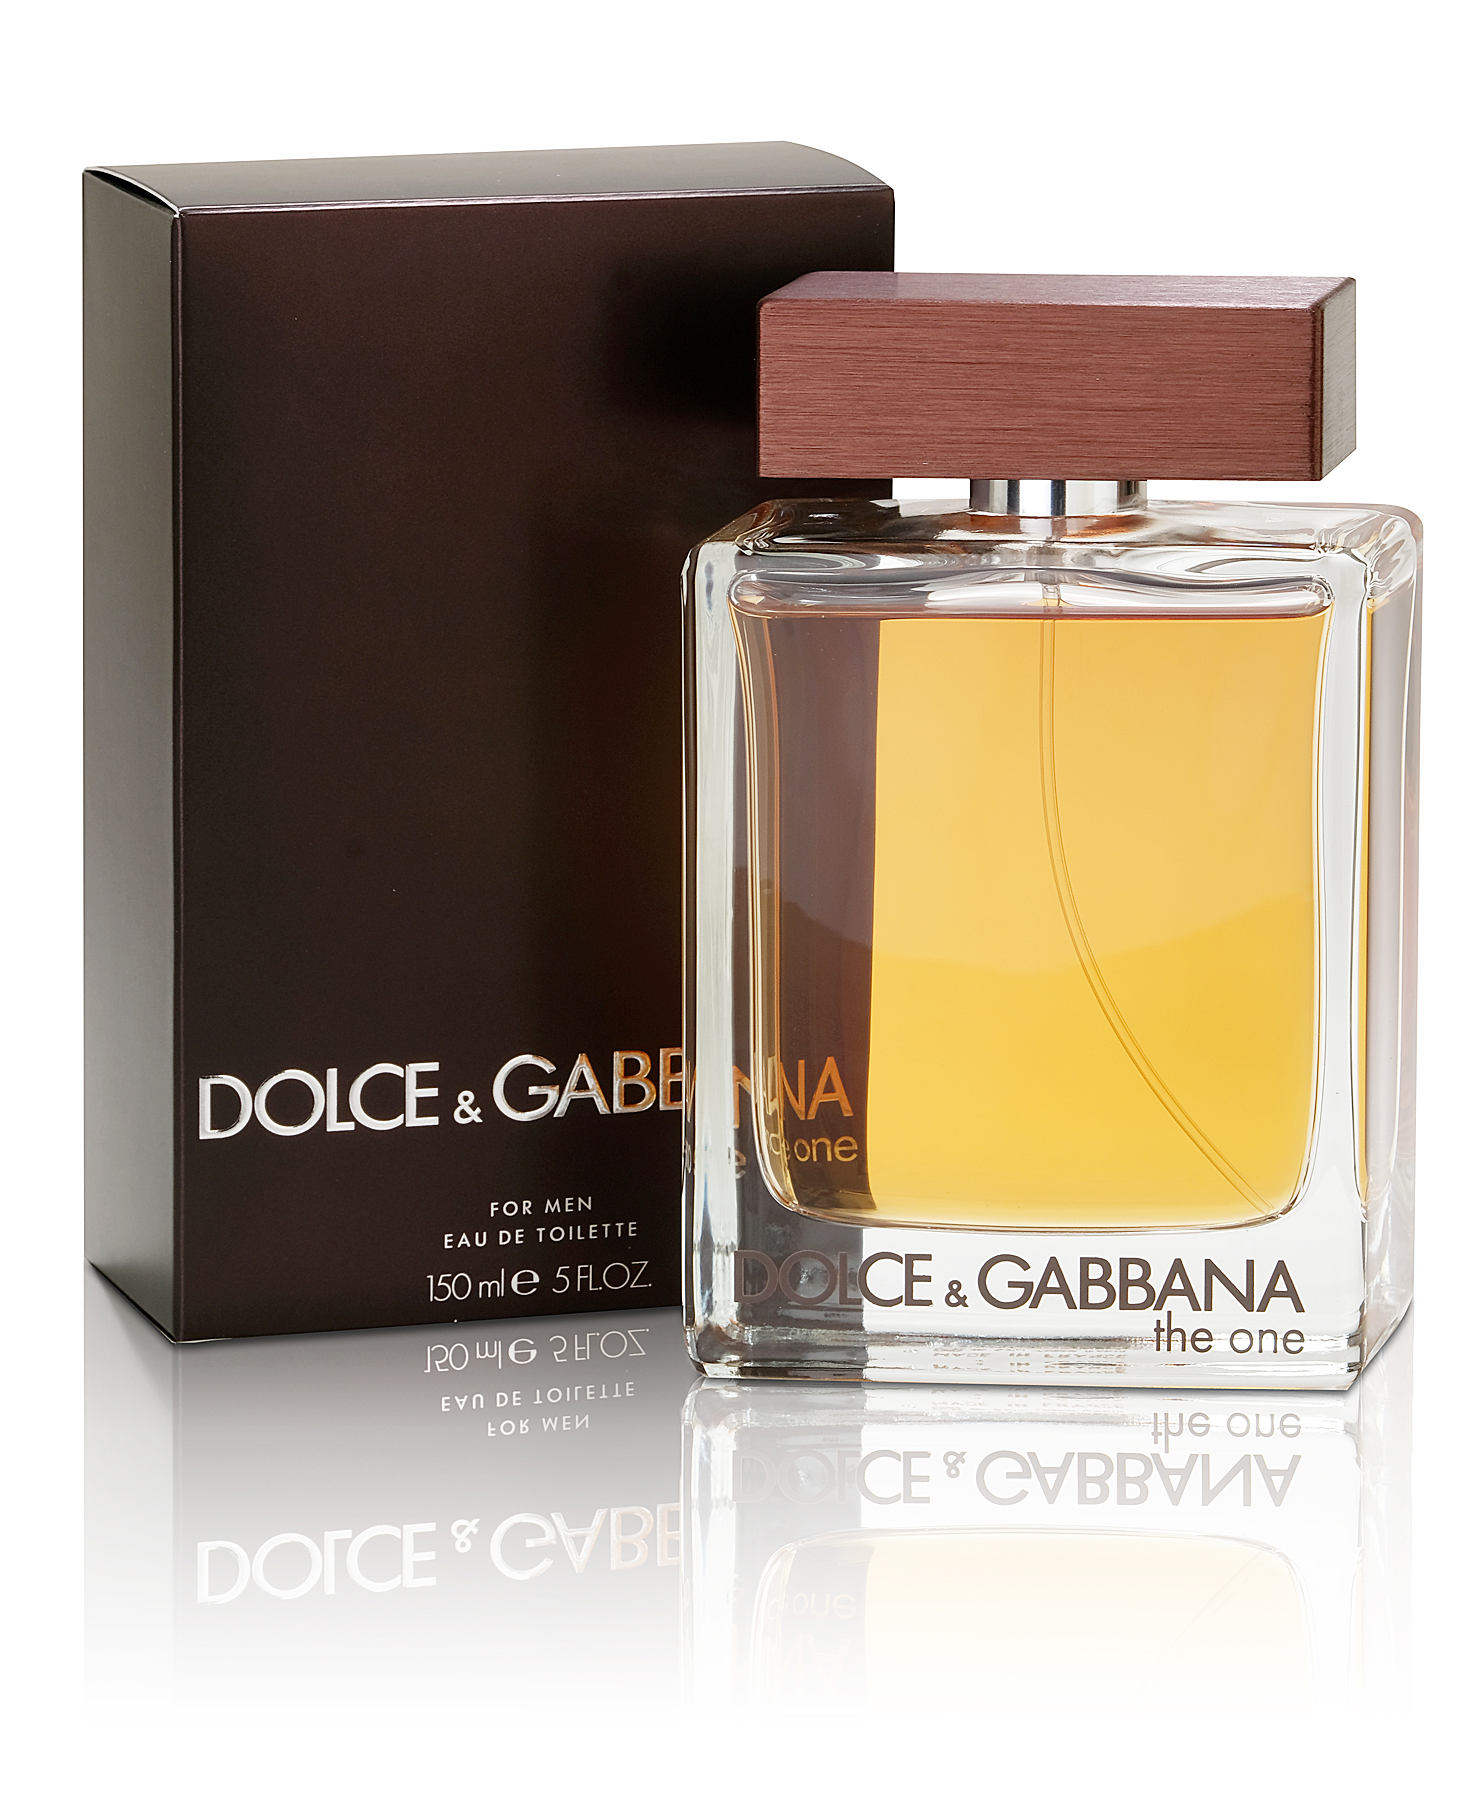 Дольче габбана кью отзывы. Dolce Gabbana the one for men 150 ml. Dolce Gabbana the one. Dolce & Gabbana the one 150 мл. Dolce Gabbana the one 3×20ml.